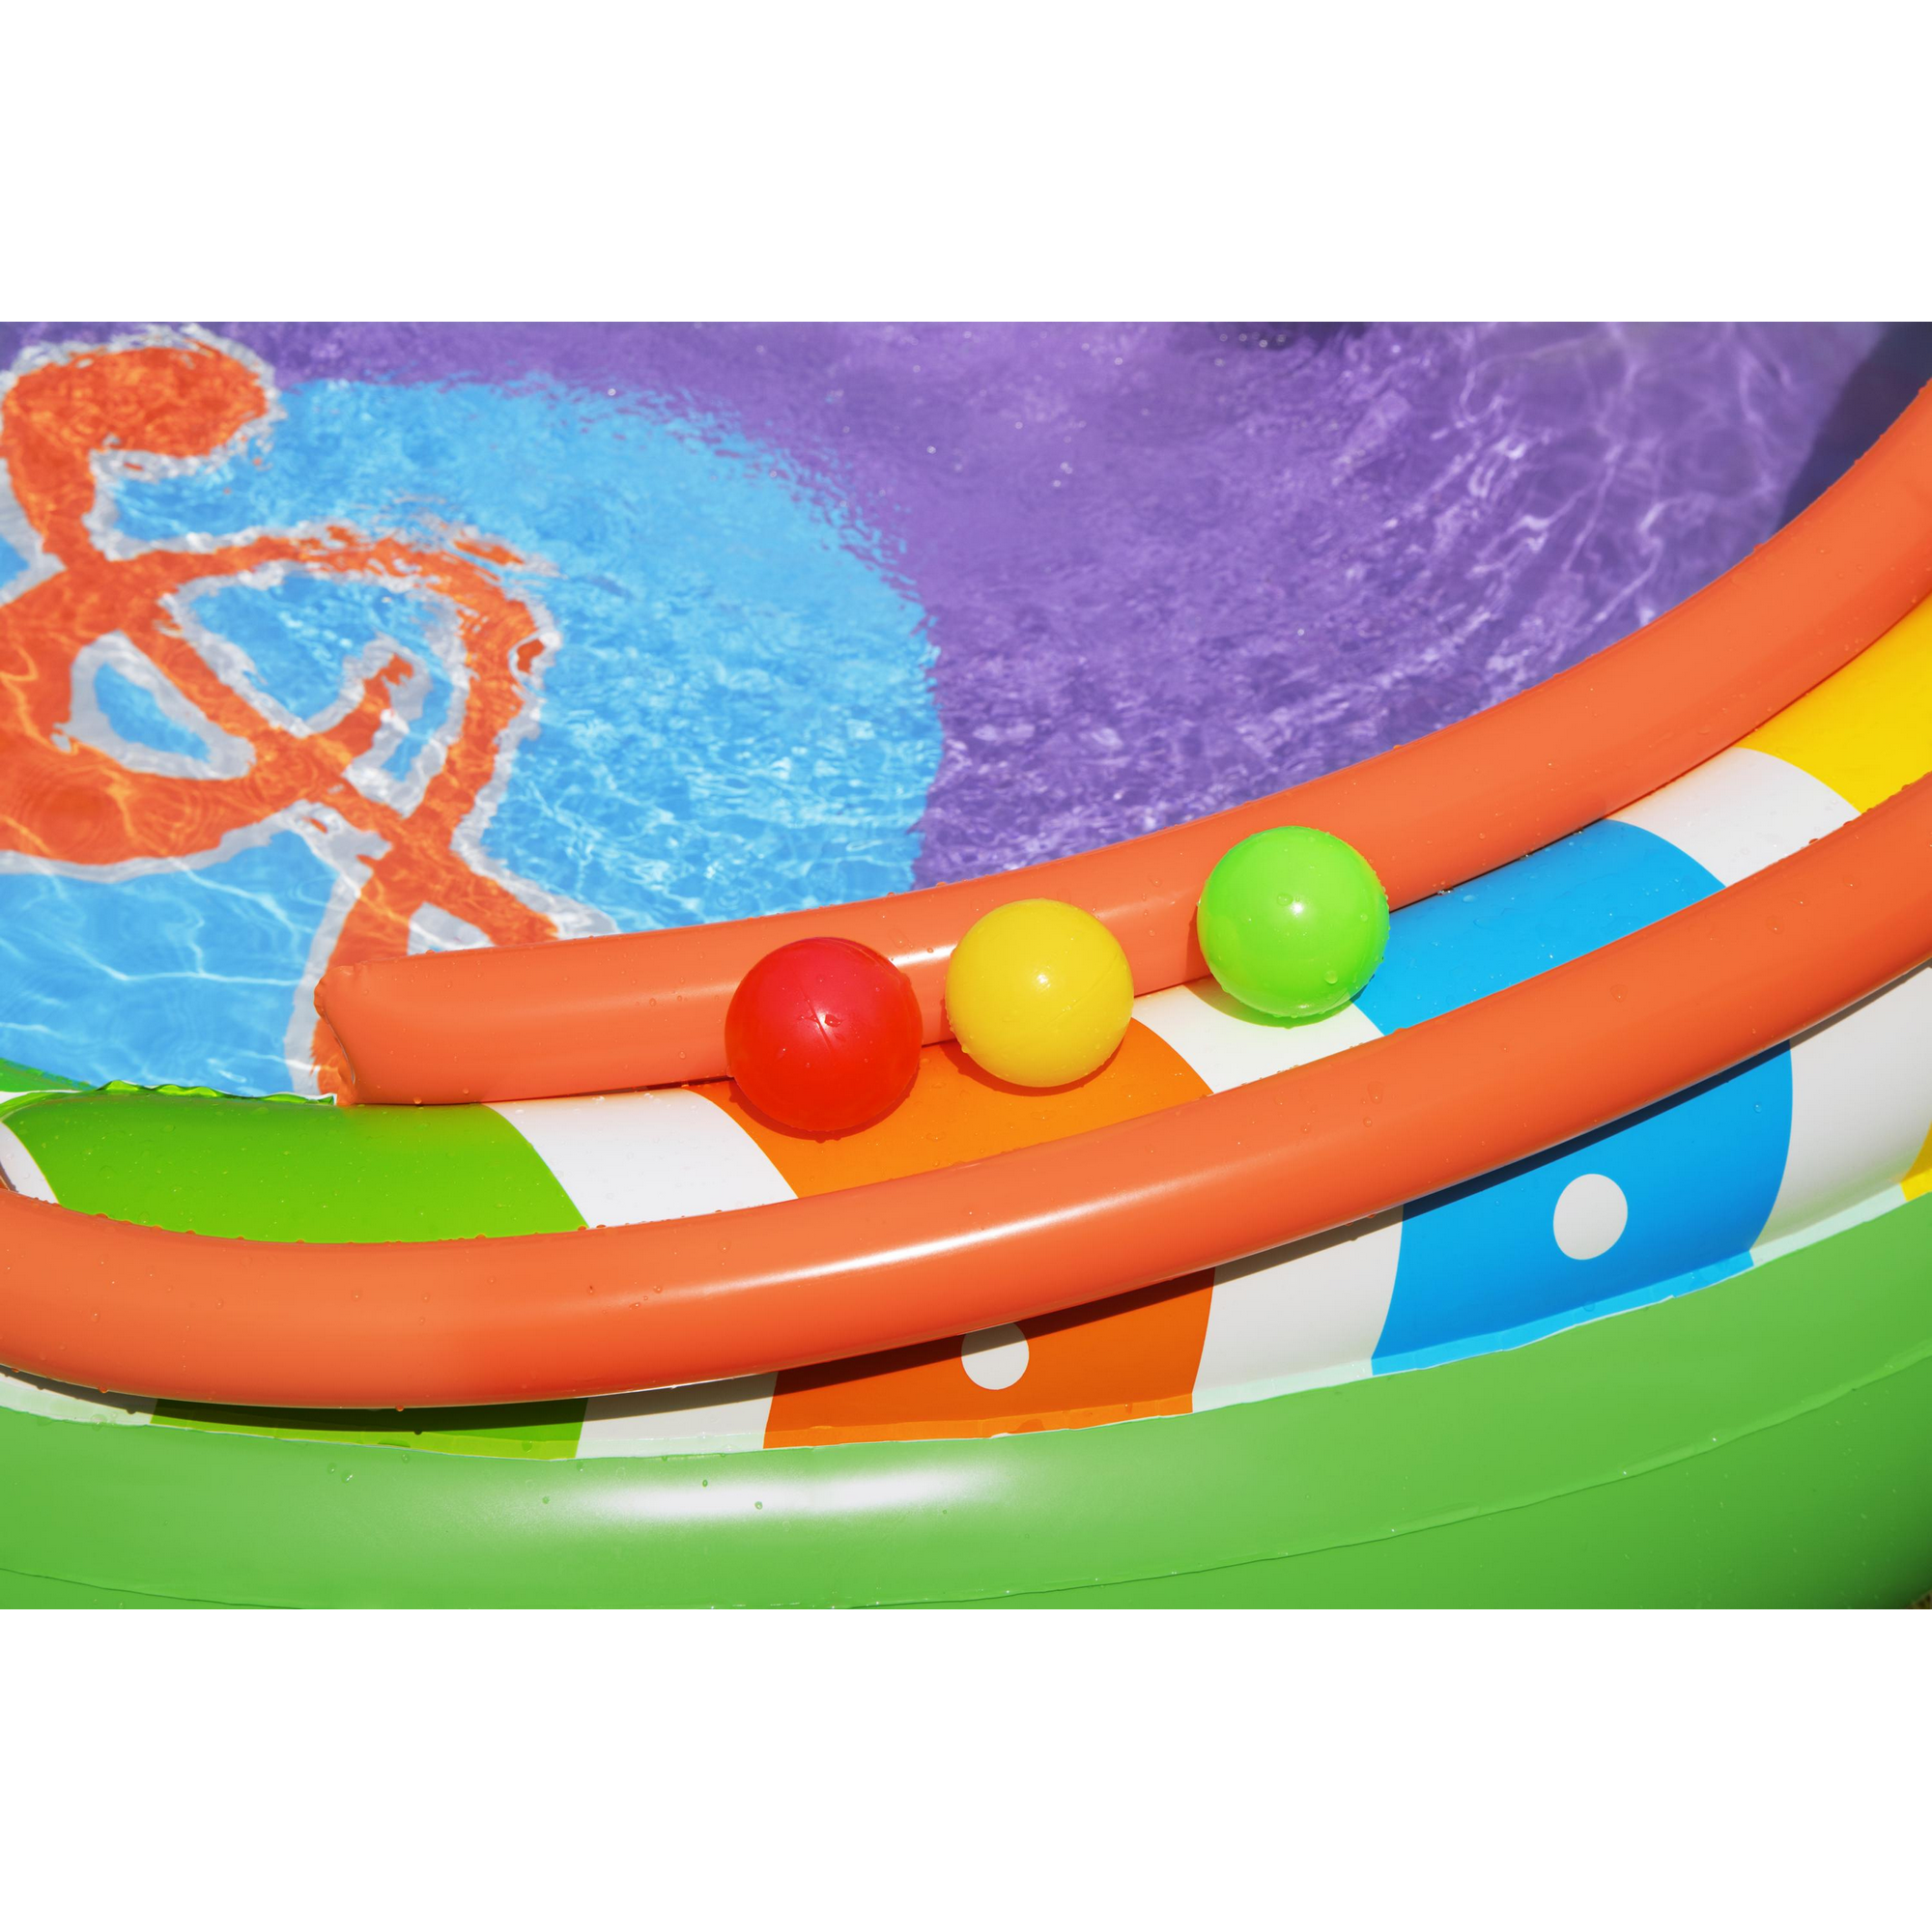 Wasserspielcenter 'Sing'n Splash' mehrfarbig 295 x 190 x 137 cm + product picture